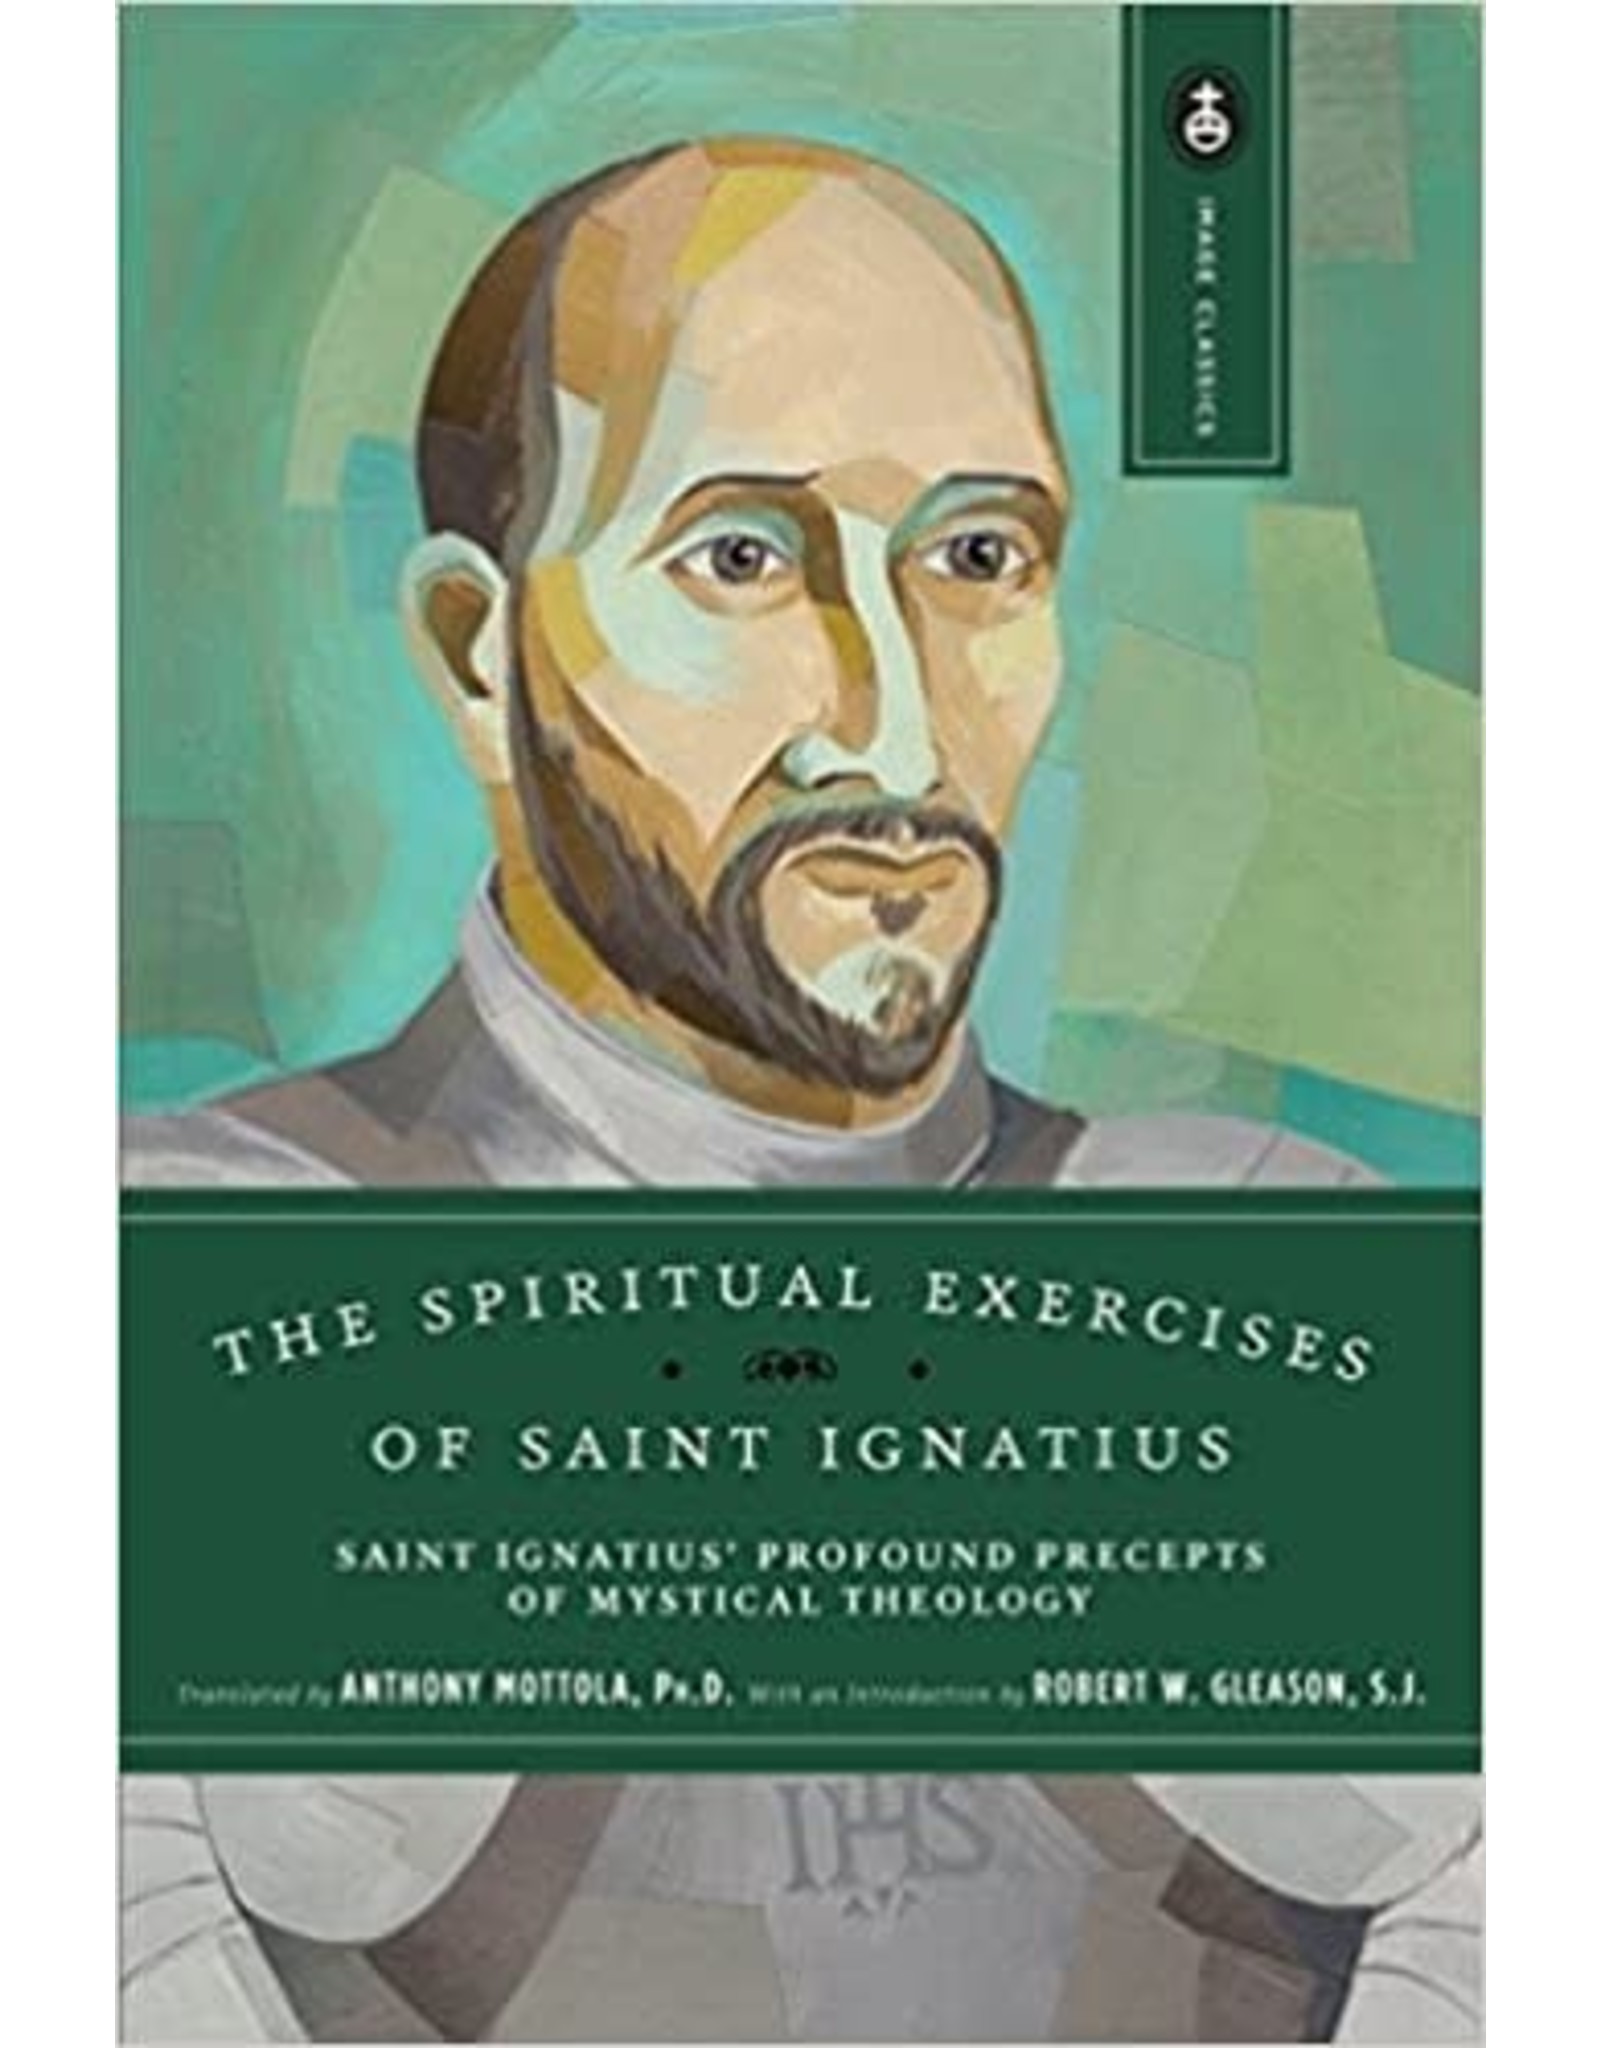 Image The Spiritual Exercises of Saint Ignatius